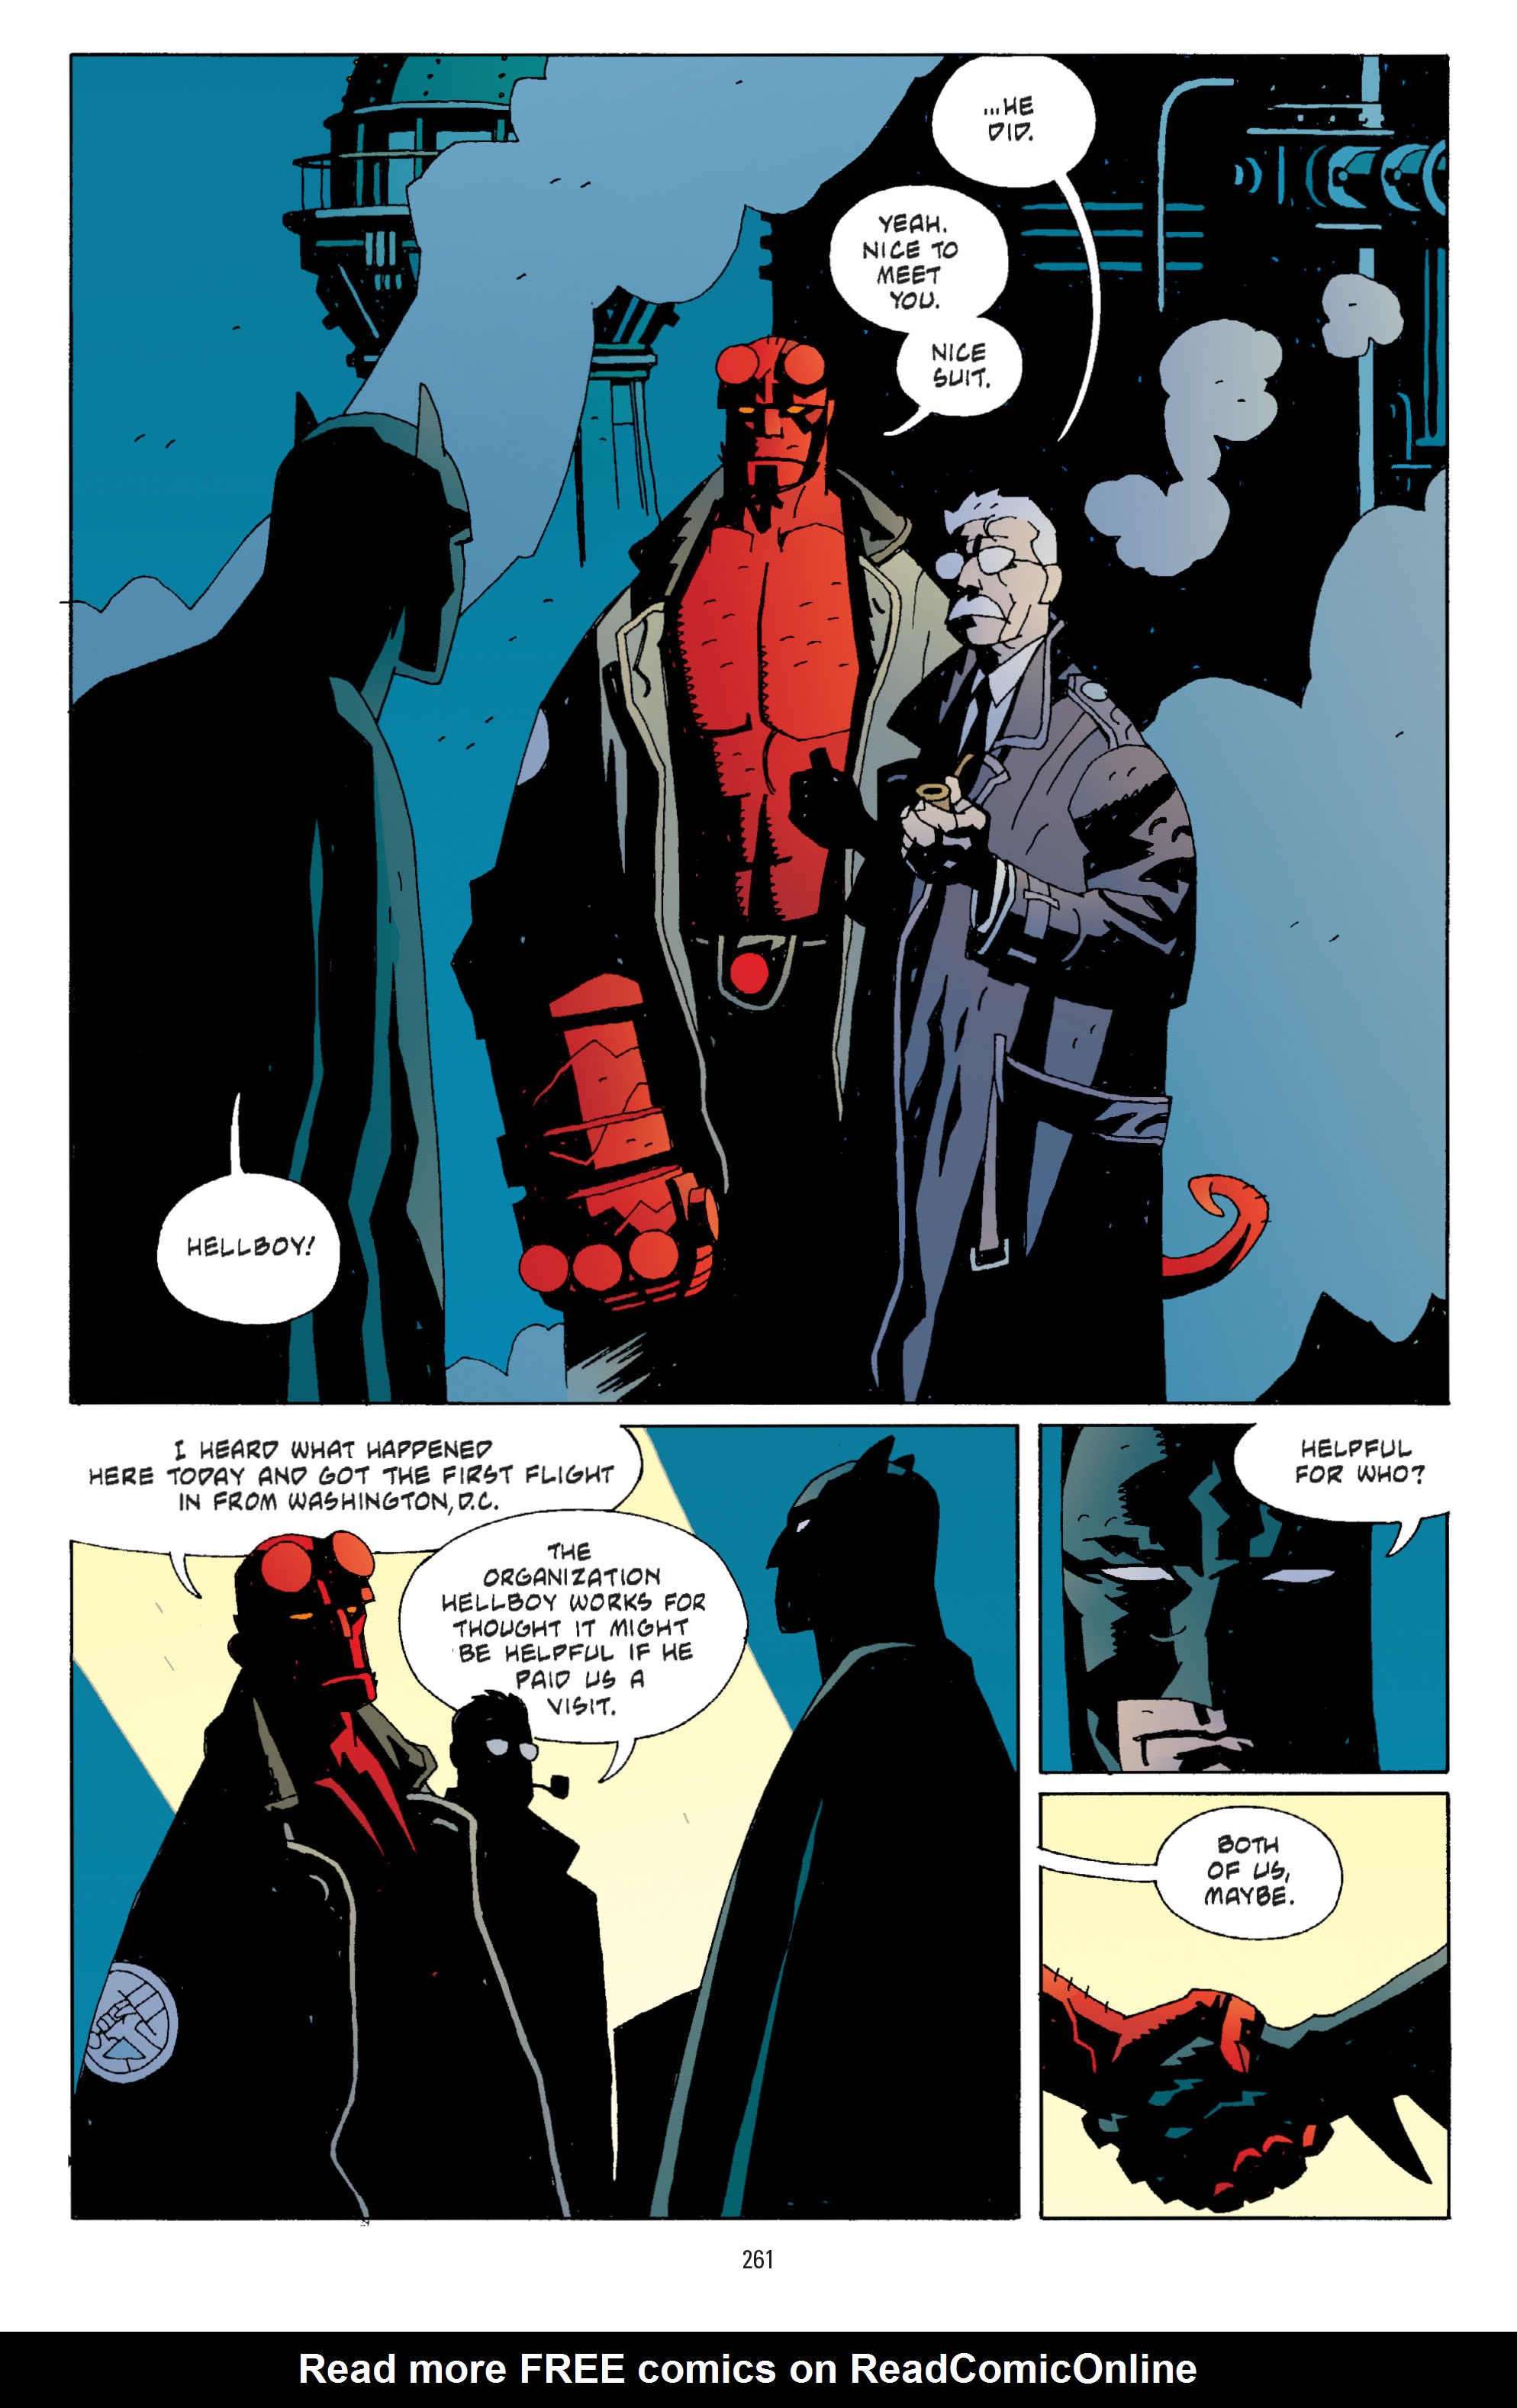 DC Comics/Dark Horse Comics: Justice League Full #1 - English 252